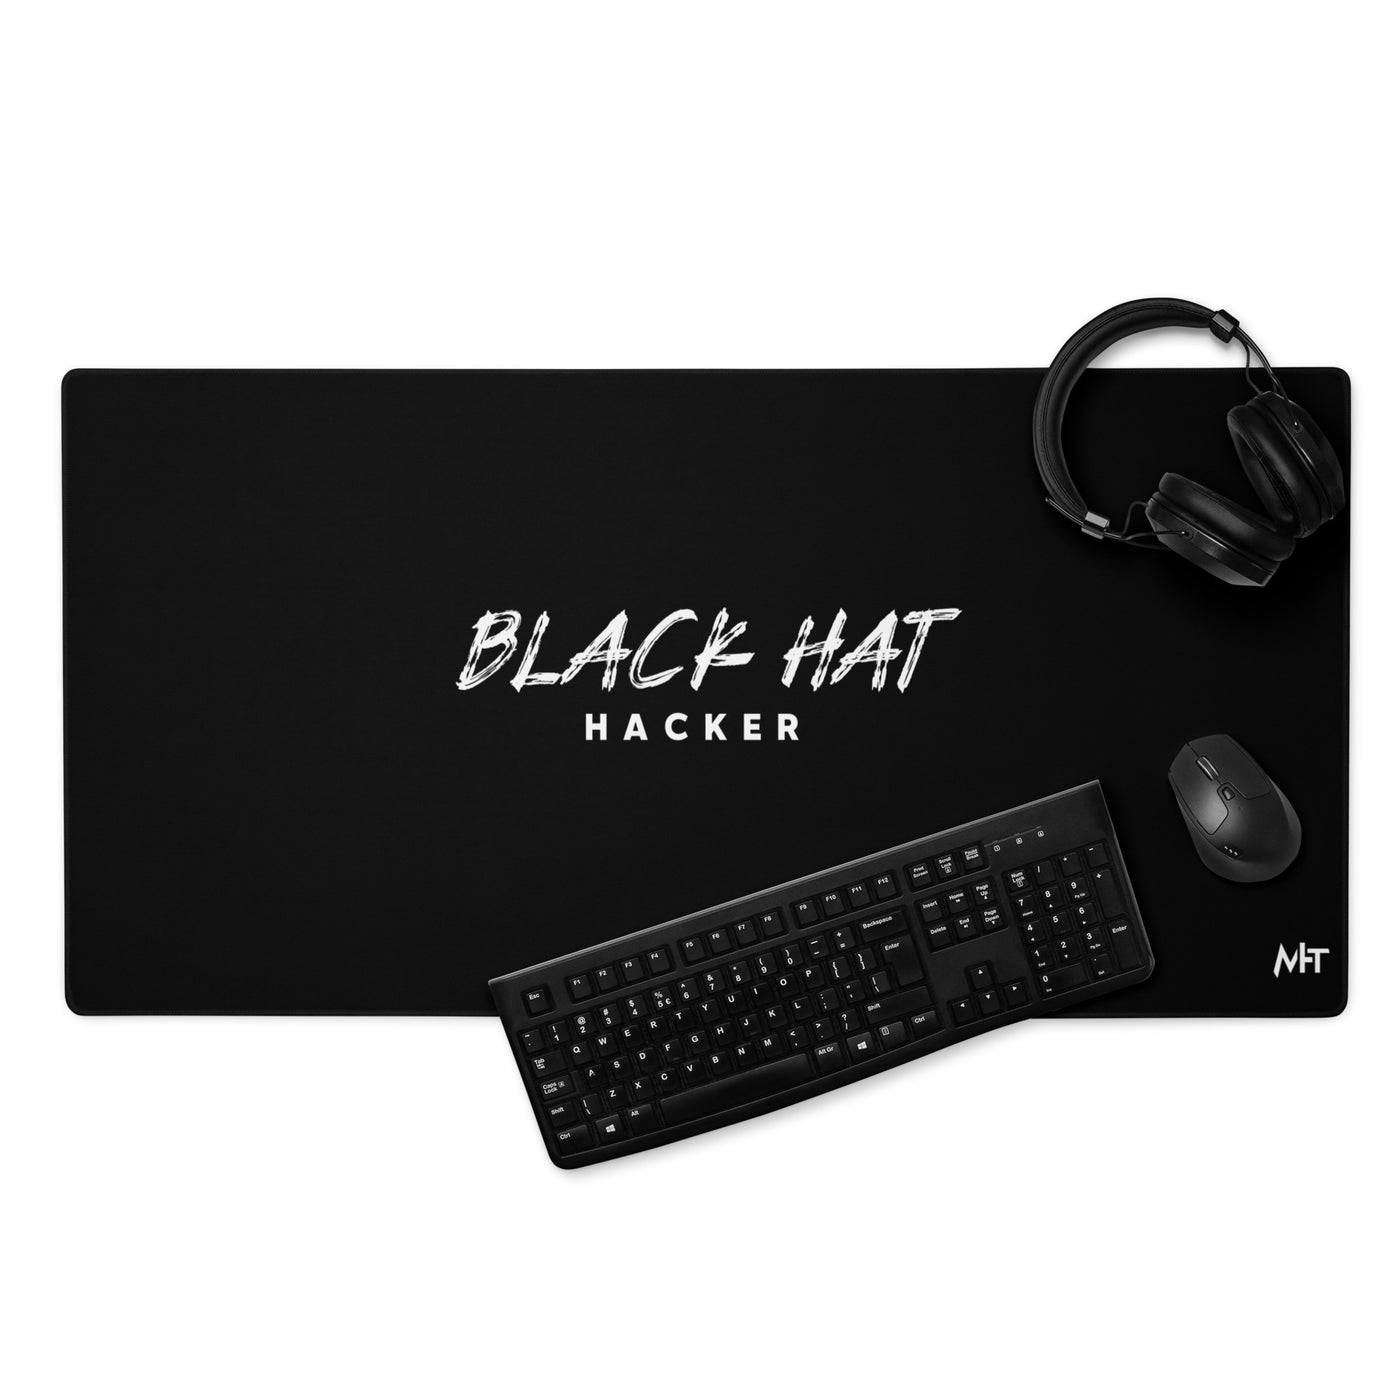 Black Hat Hacker V19 Desk Mat